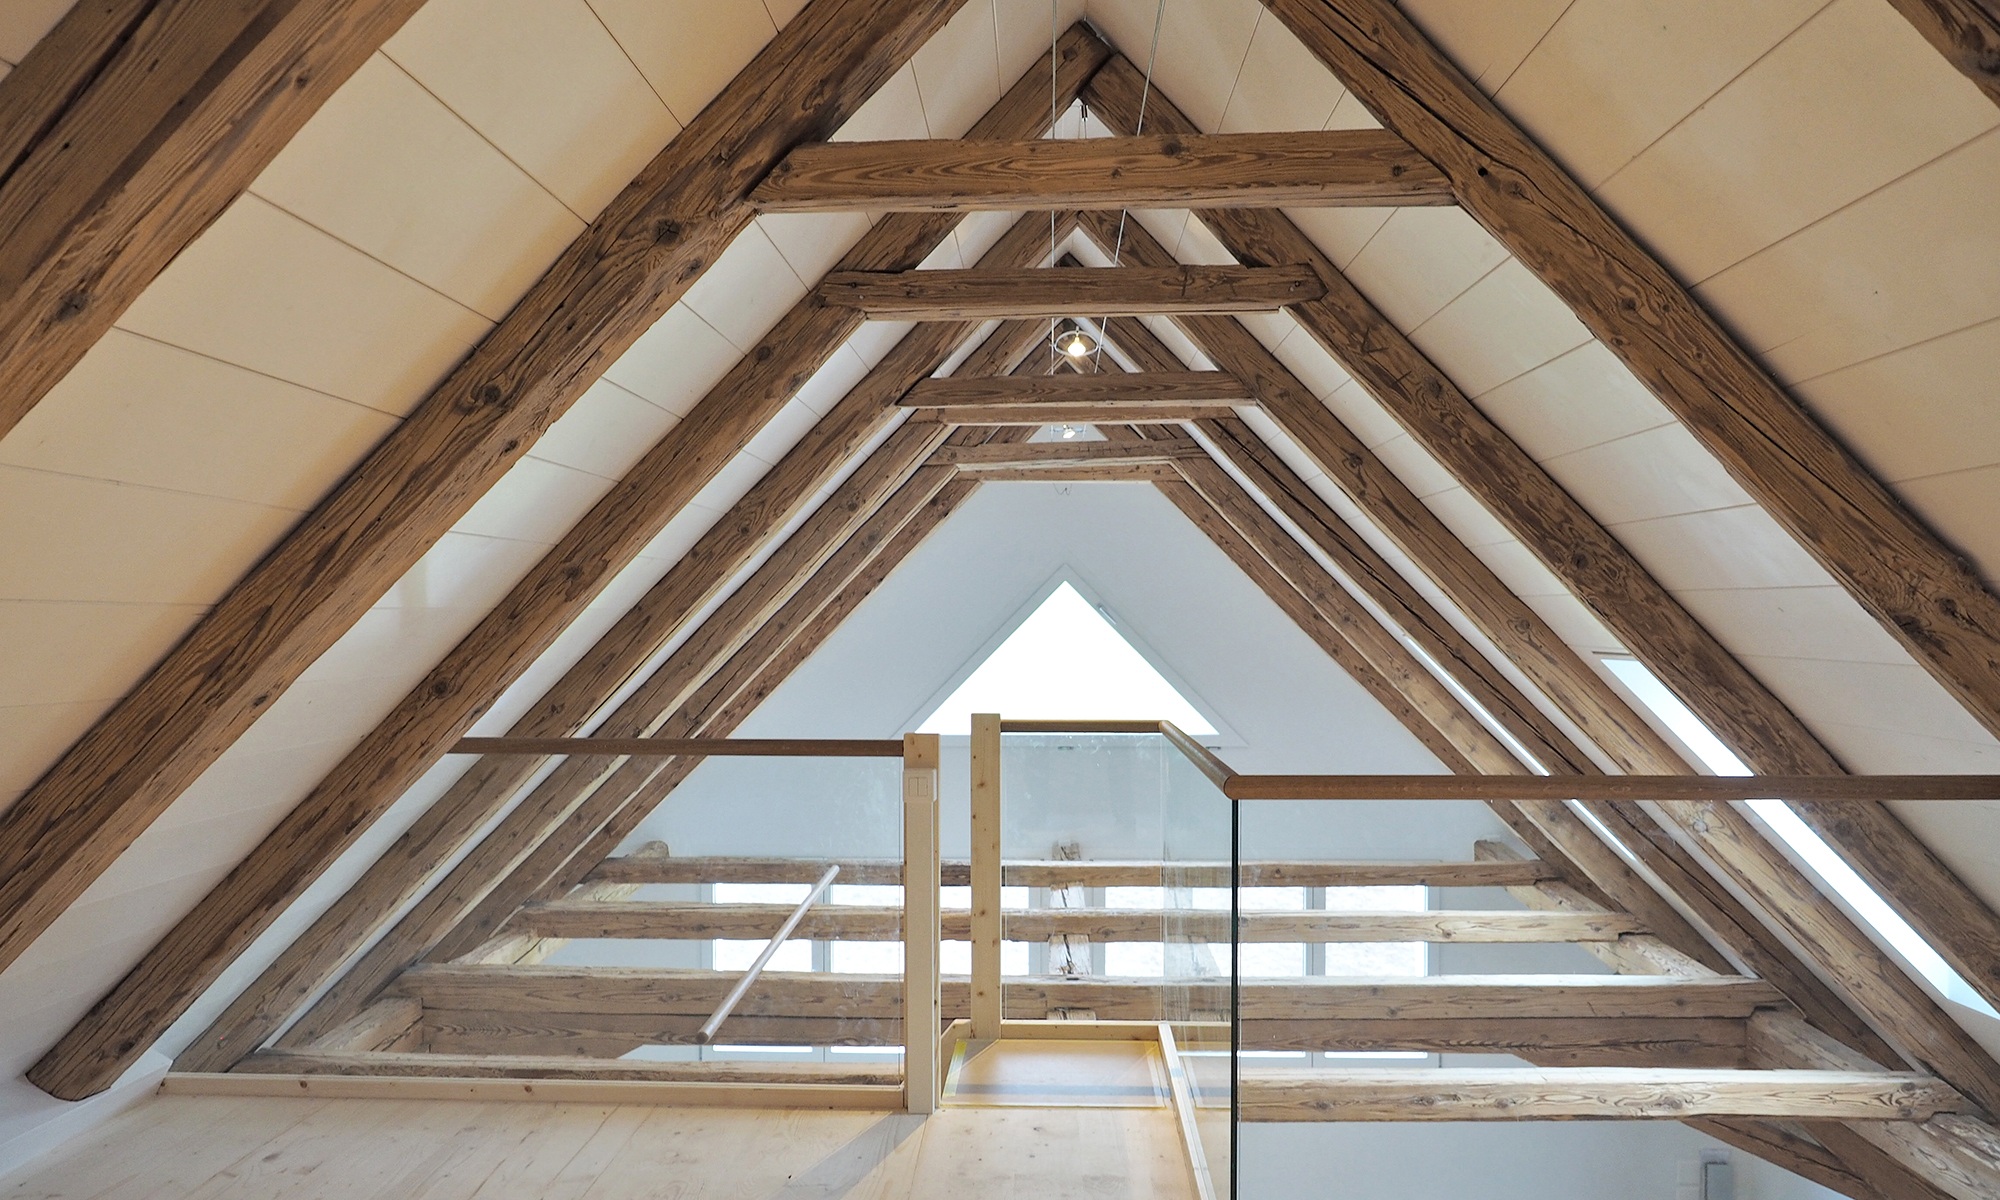 Lichtdurchflutetes offenes Dachgeschoss gesichert durch Glas- und Holzgeländer. Die Dachschrägen sind verkleidet mit breiten Holzbalken.